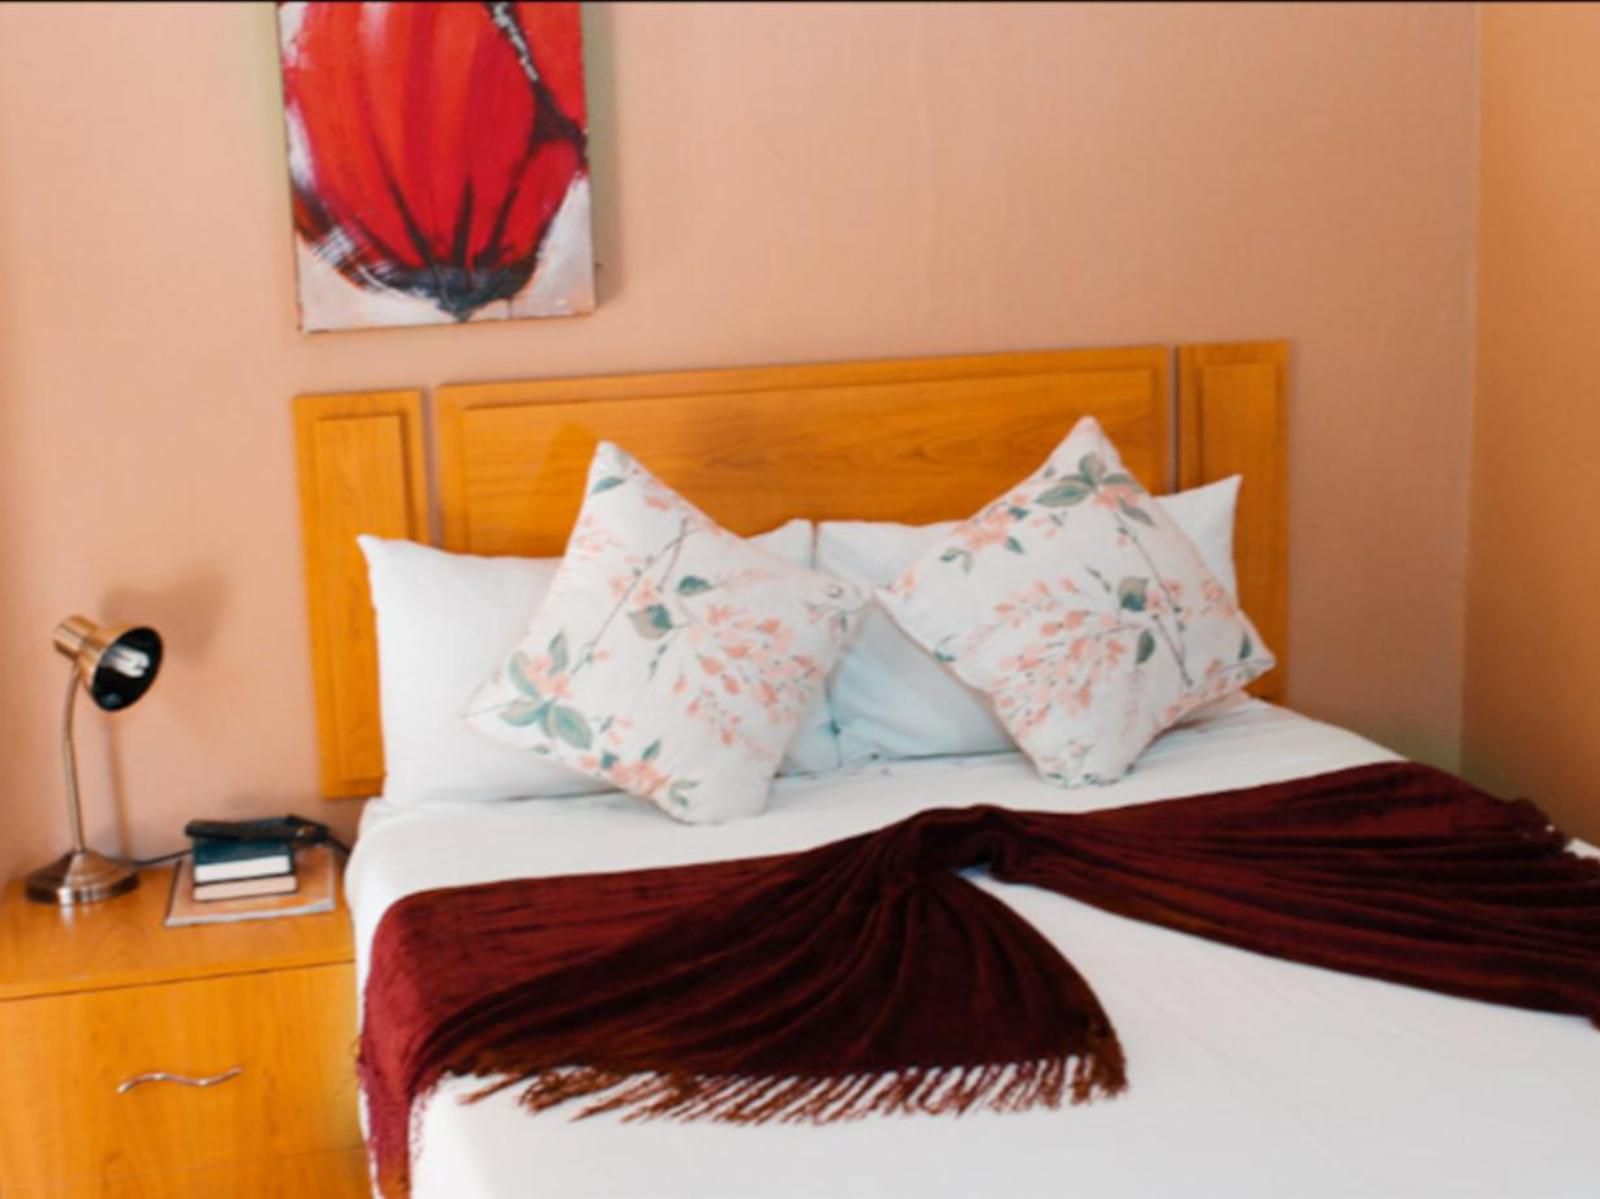 Ekhaya Nelspruit Guest House West Acres Nelspruit Mpumalanga South Africa Bedroom